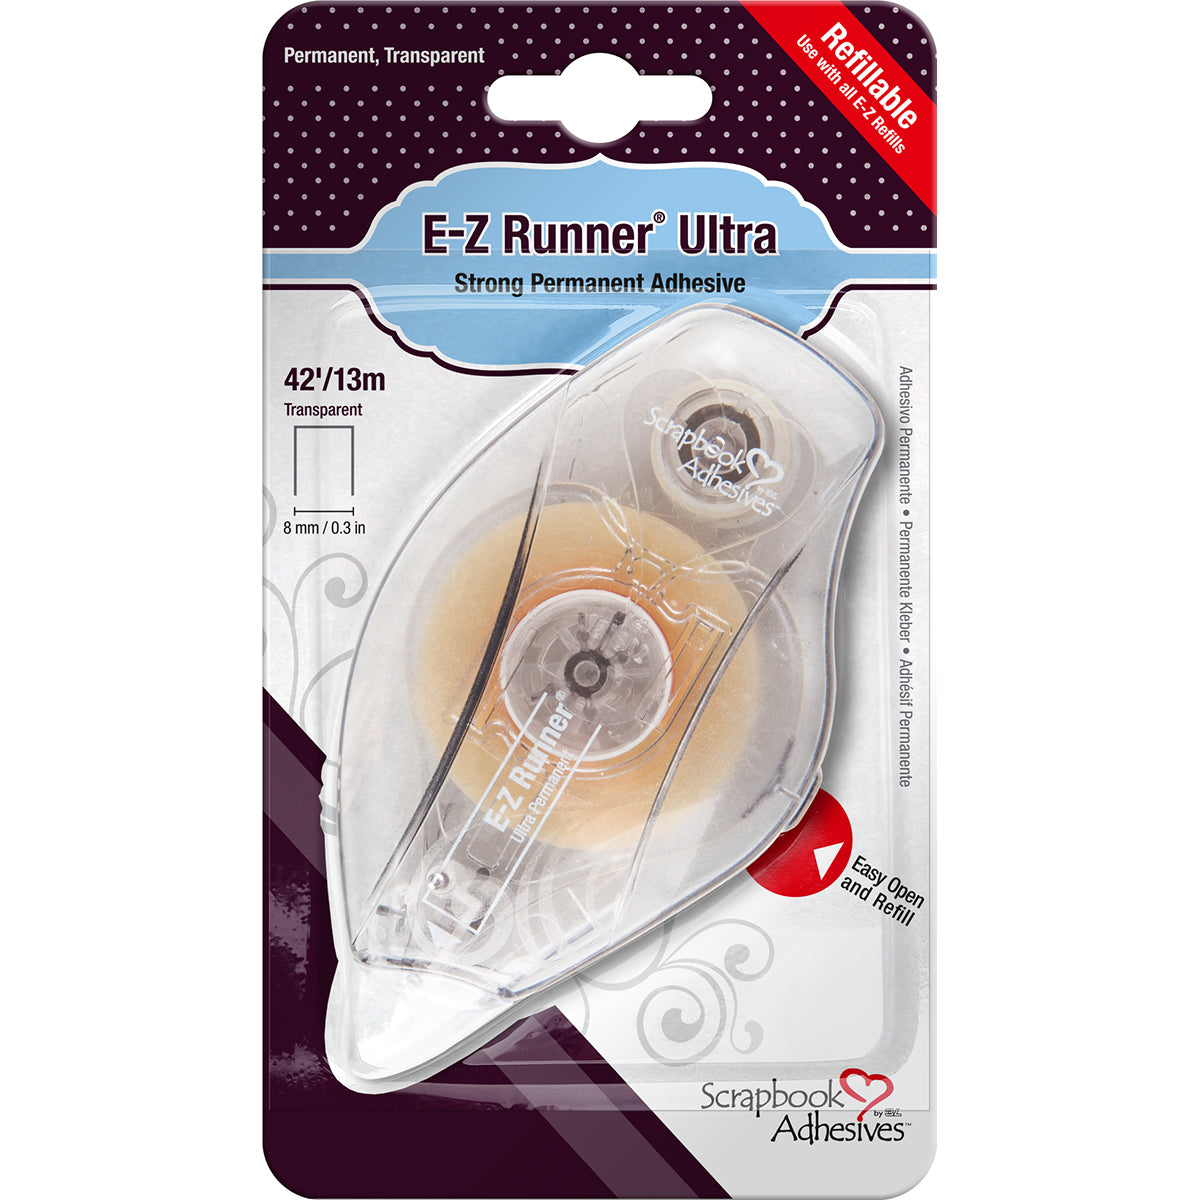 E-Z Runner Ultra Adhesive